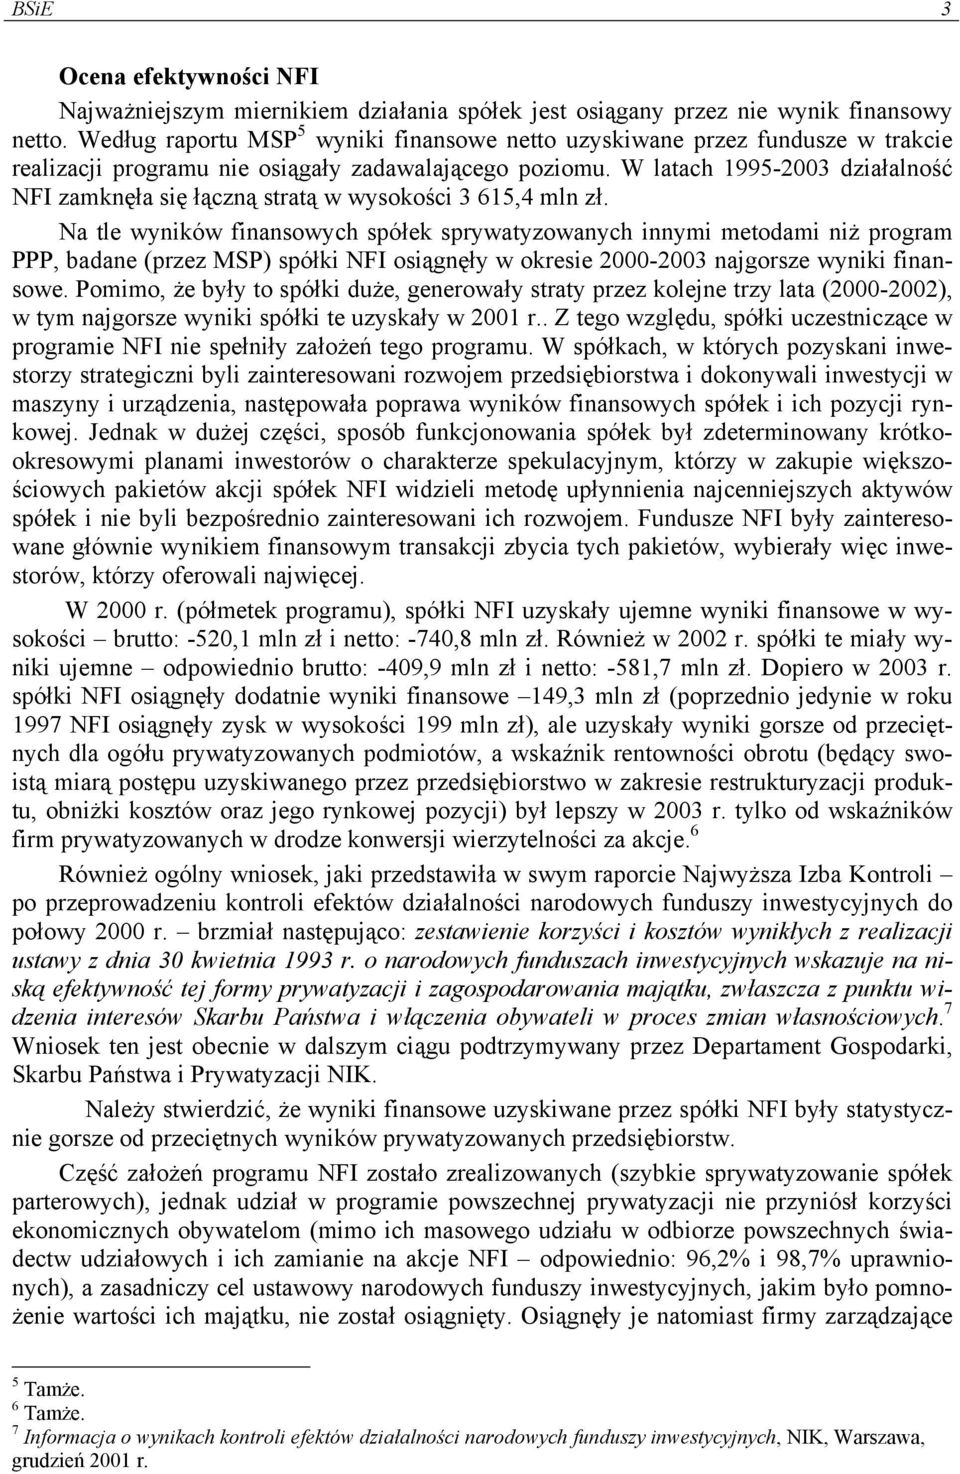 W latach 1995-2003 działalność NFI zamknęła się łączną stratą w wysokości 3 615,4 mln zł.